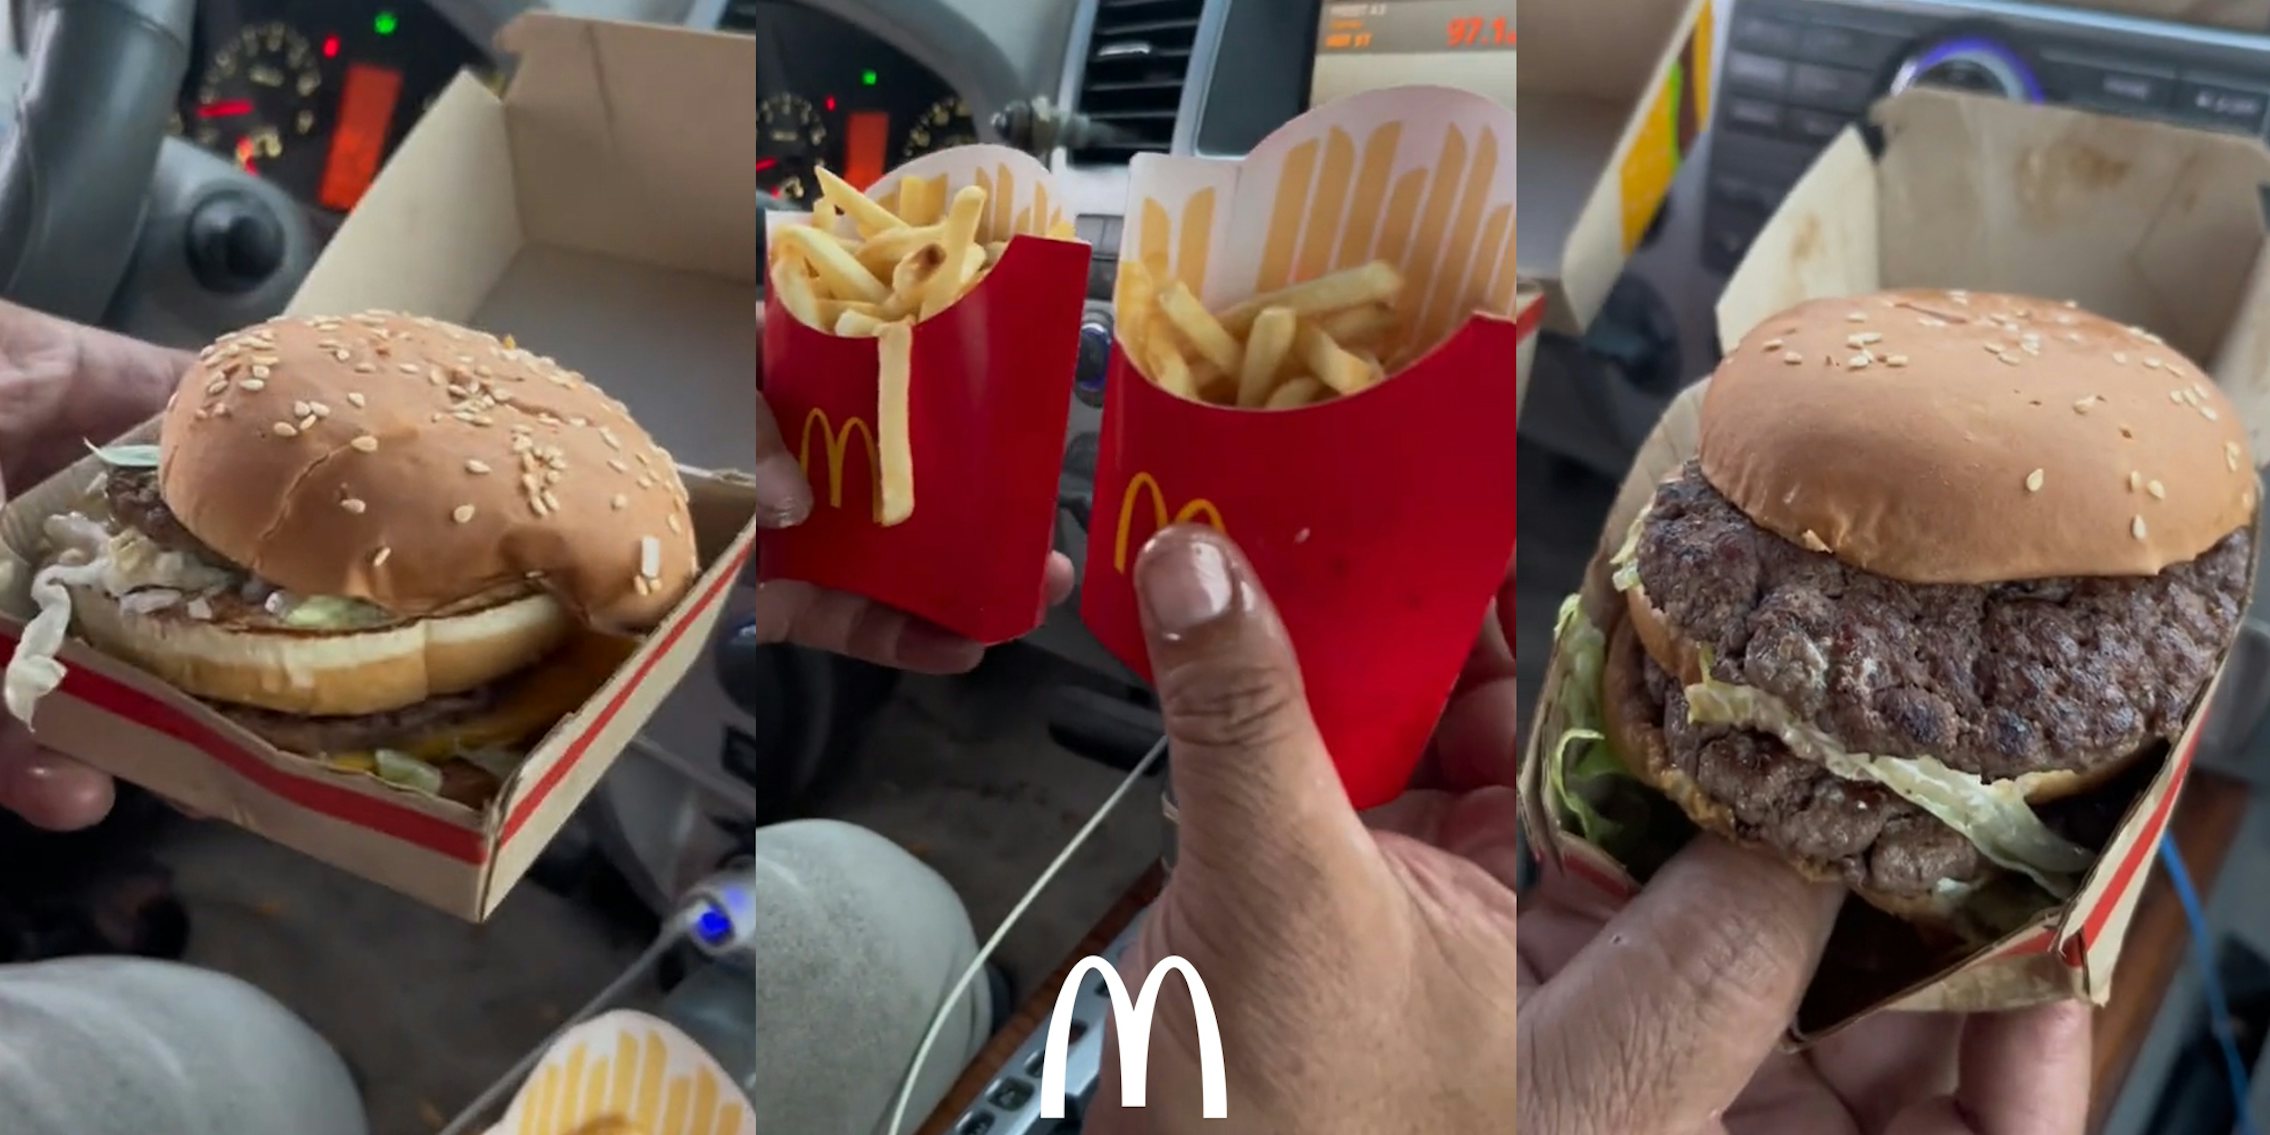 McDonald's Big Mac in hand in car (l) McDonald's fries hand in car with McDonald's 'm' logo at bottom (c) McDonald's Big Mac in hand in car (r)